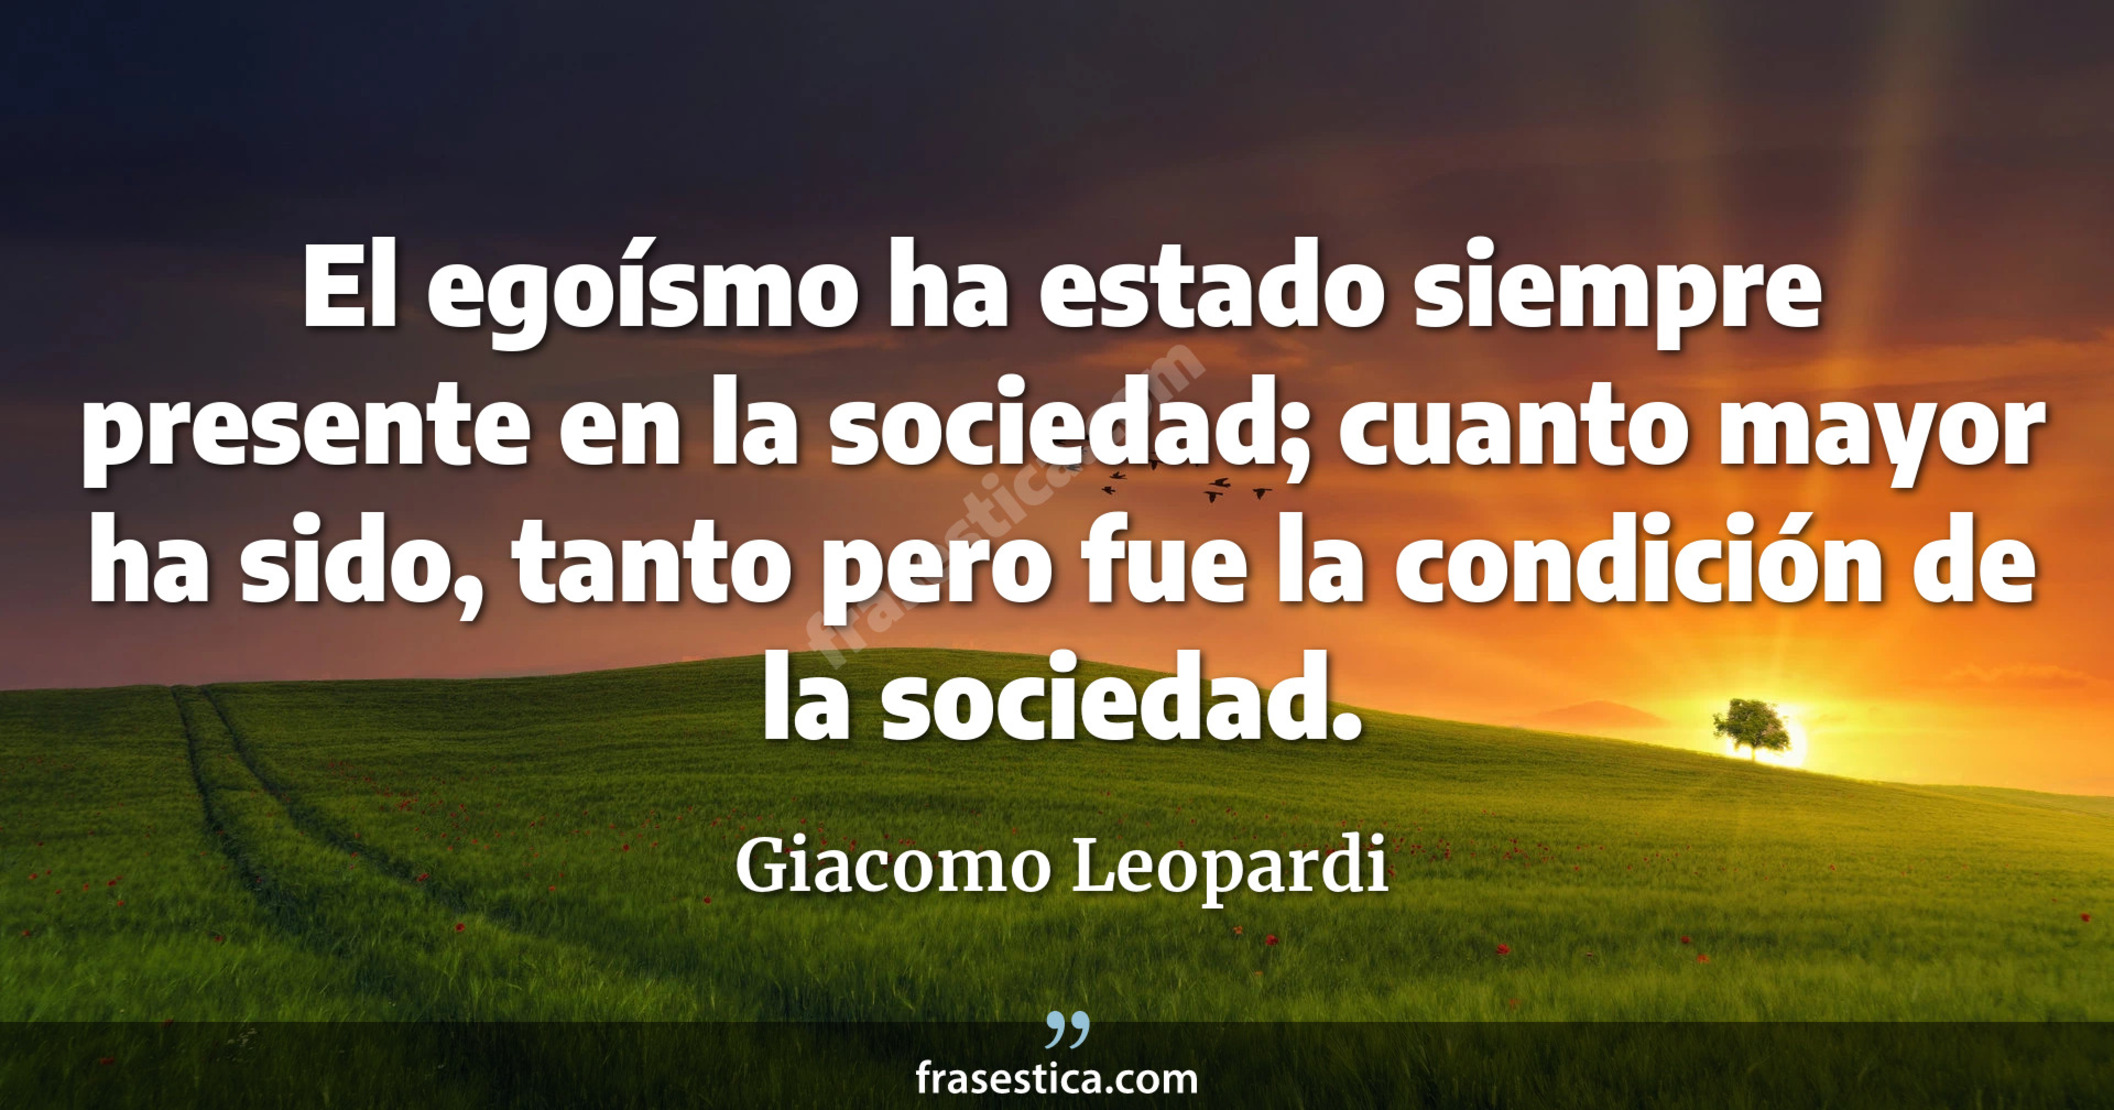 El egoísmo ha estado siempre presente en la sociedad; cuanto mayor ha sido, tanto pero fue la condición de la sociedad. - Giacomo Leopardi